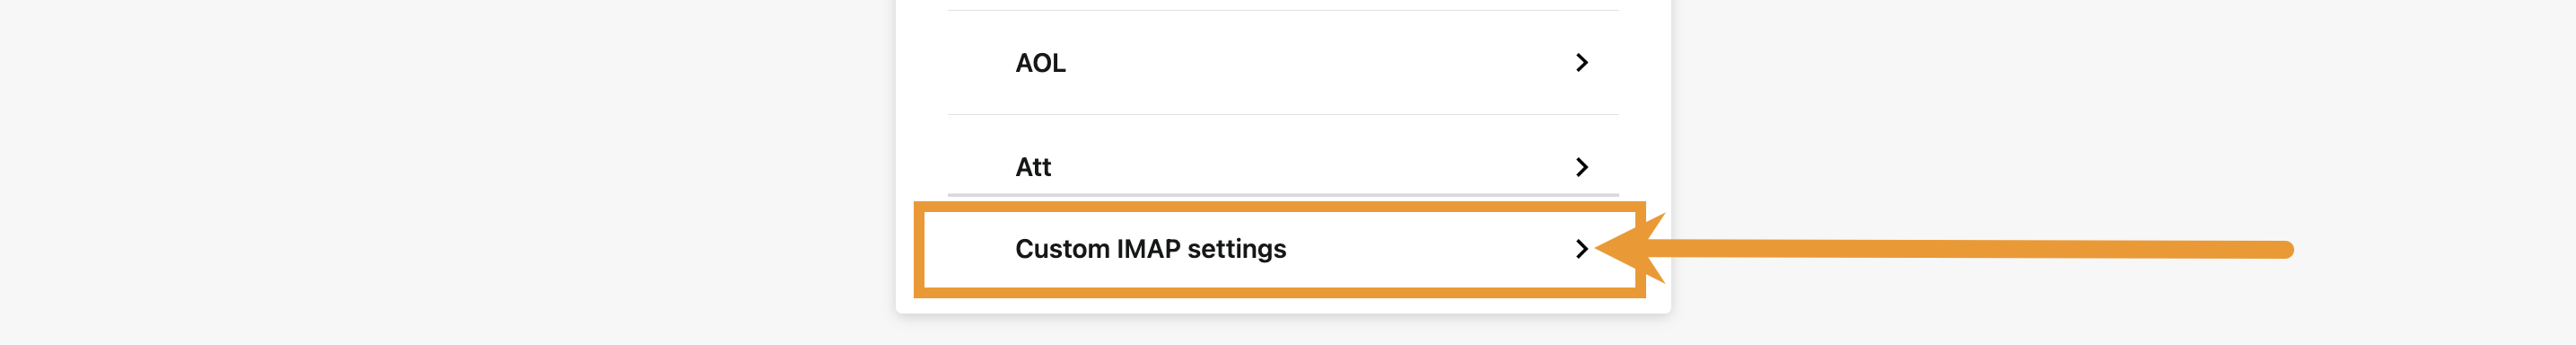 Custom IMAP settings option